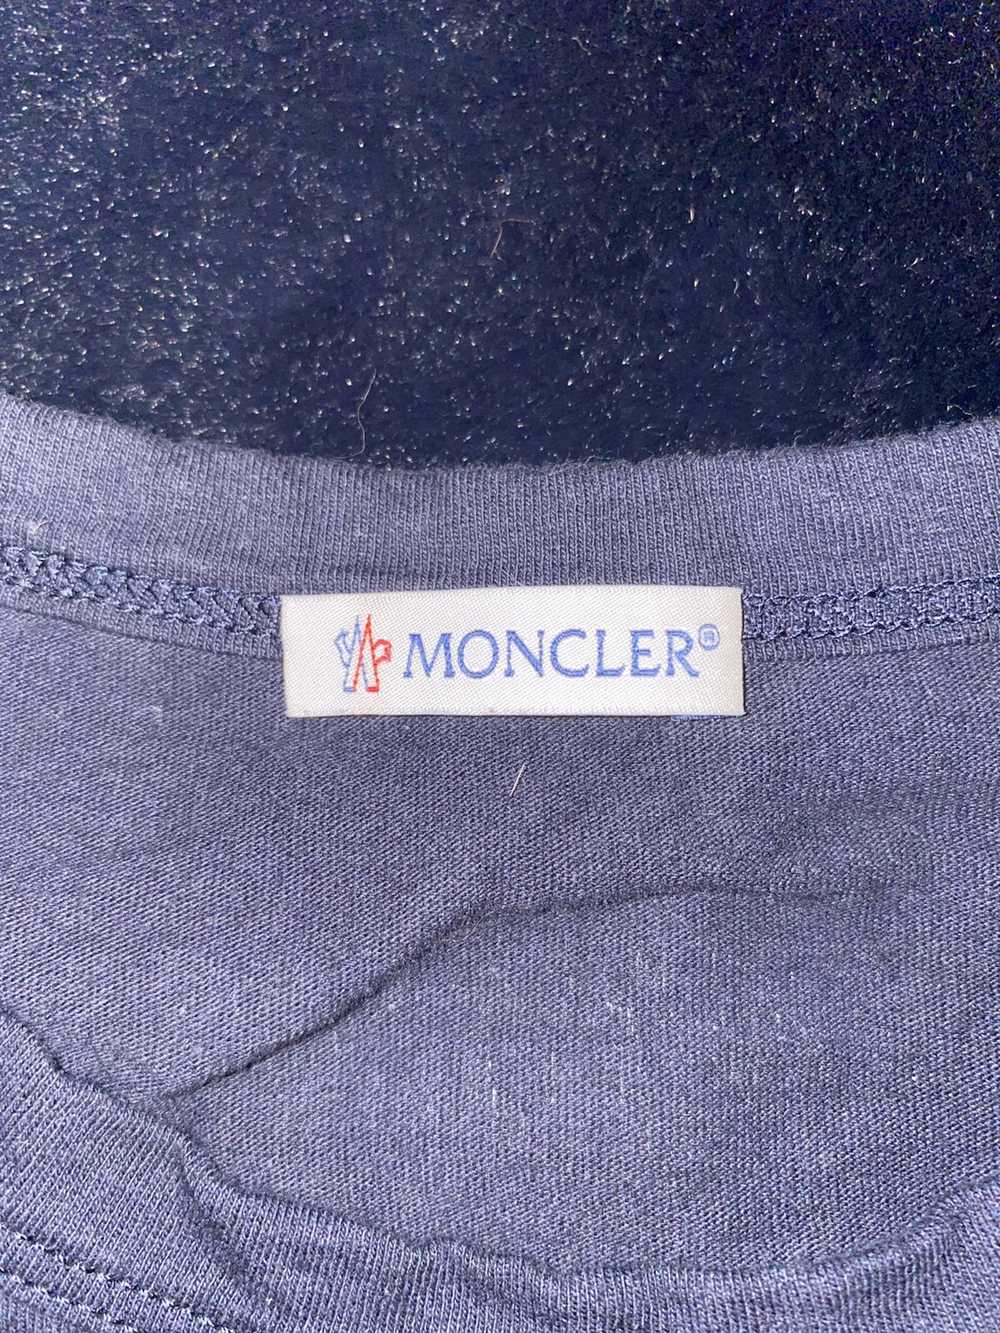 Moncler × Moncler Genius Moncler Genius - New Yor… - image 3